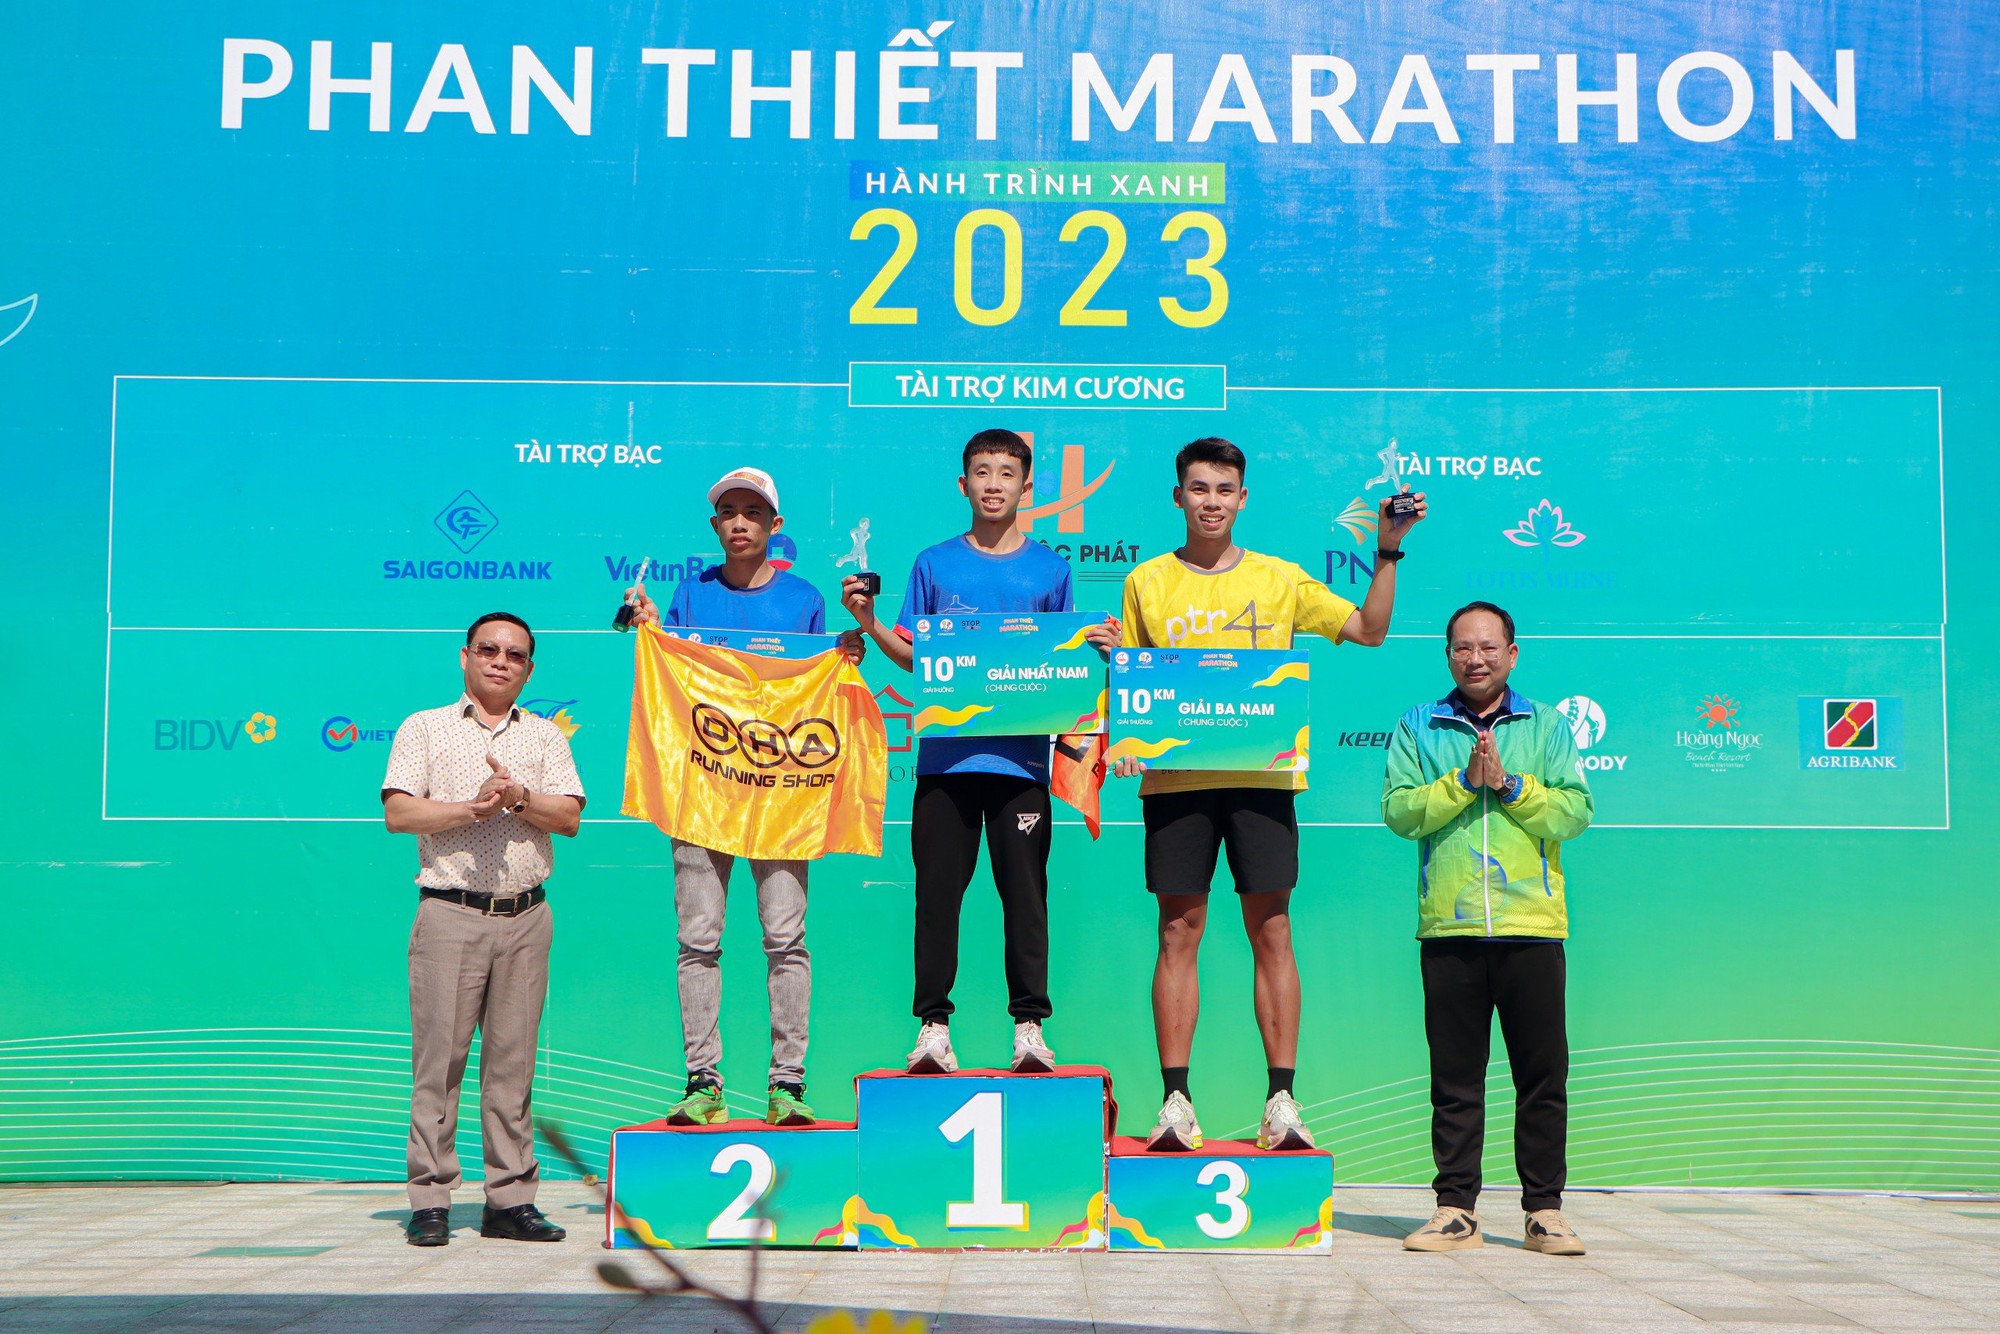 Cựu tuyển thủ Phạm Thị Bình chinh phục Phan Thiết Marathon 2023 - Ảnh 4.